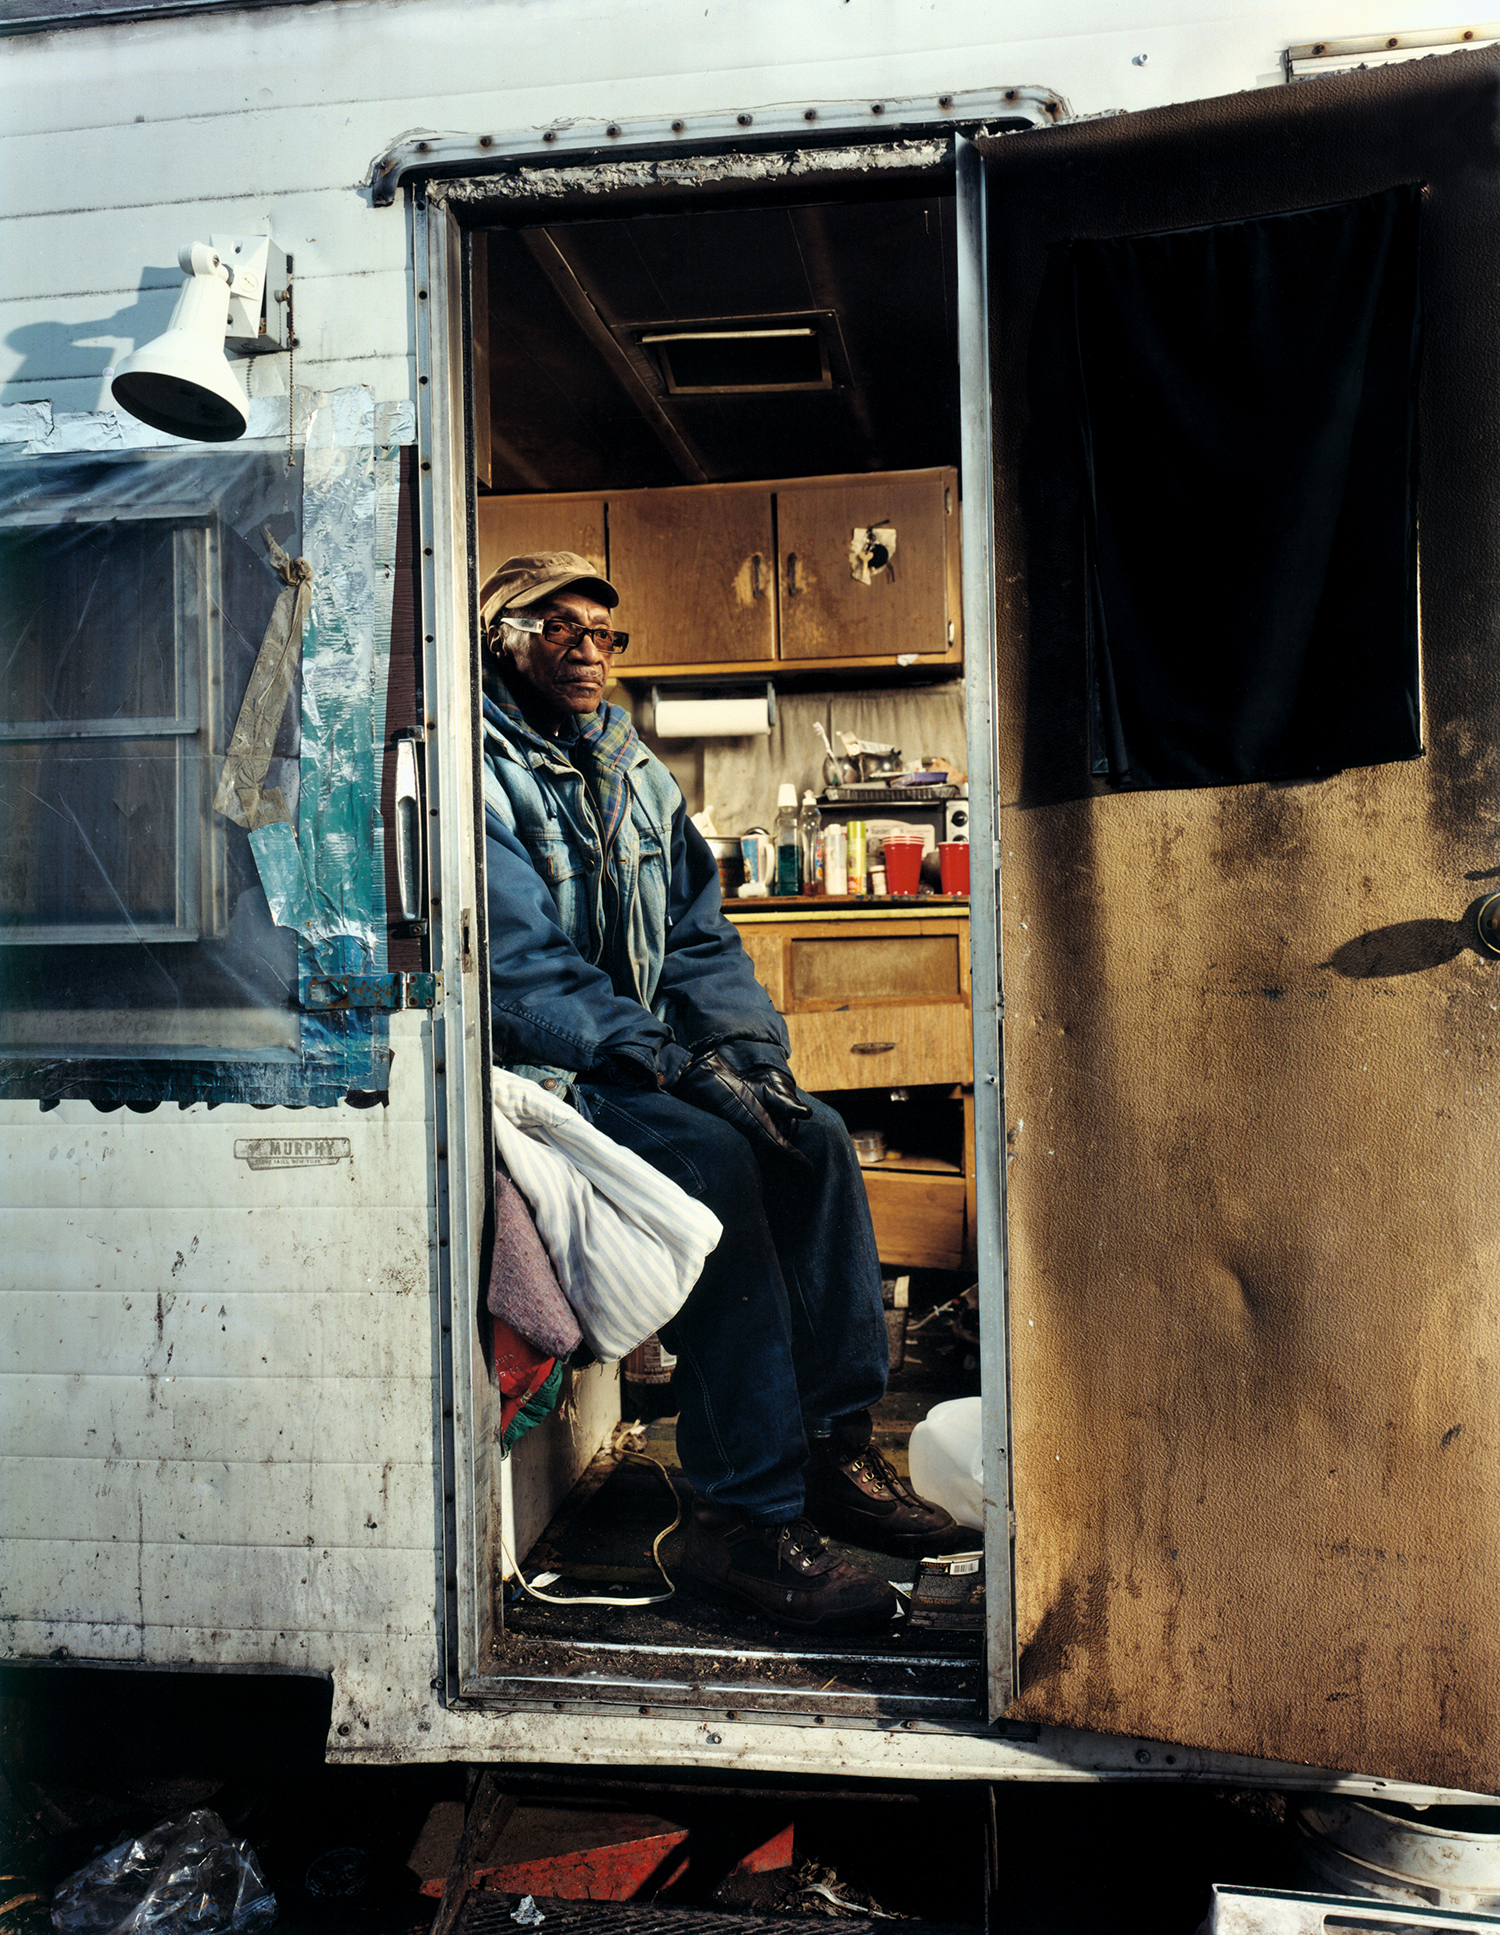   Robert - homeless man - Bronx, NY  